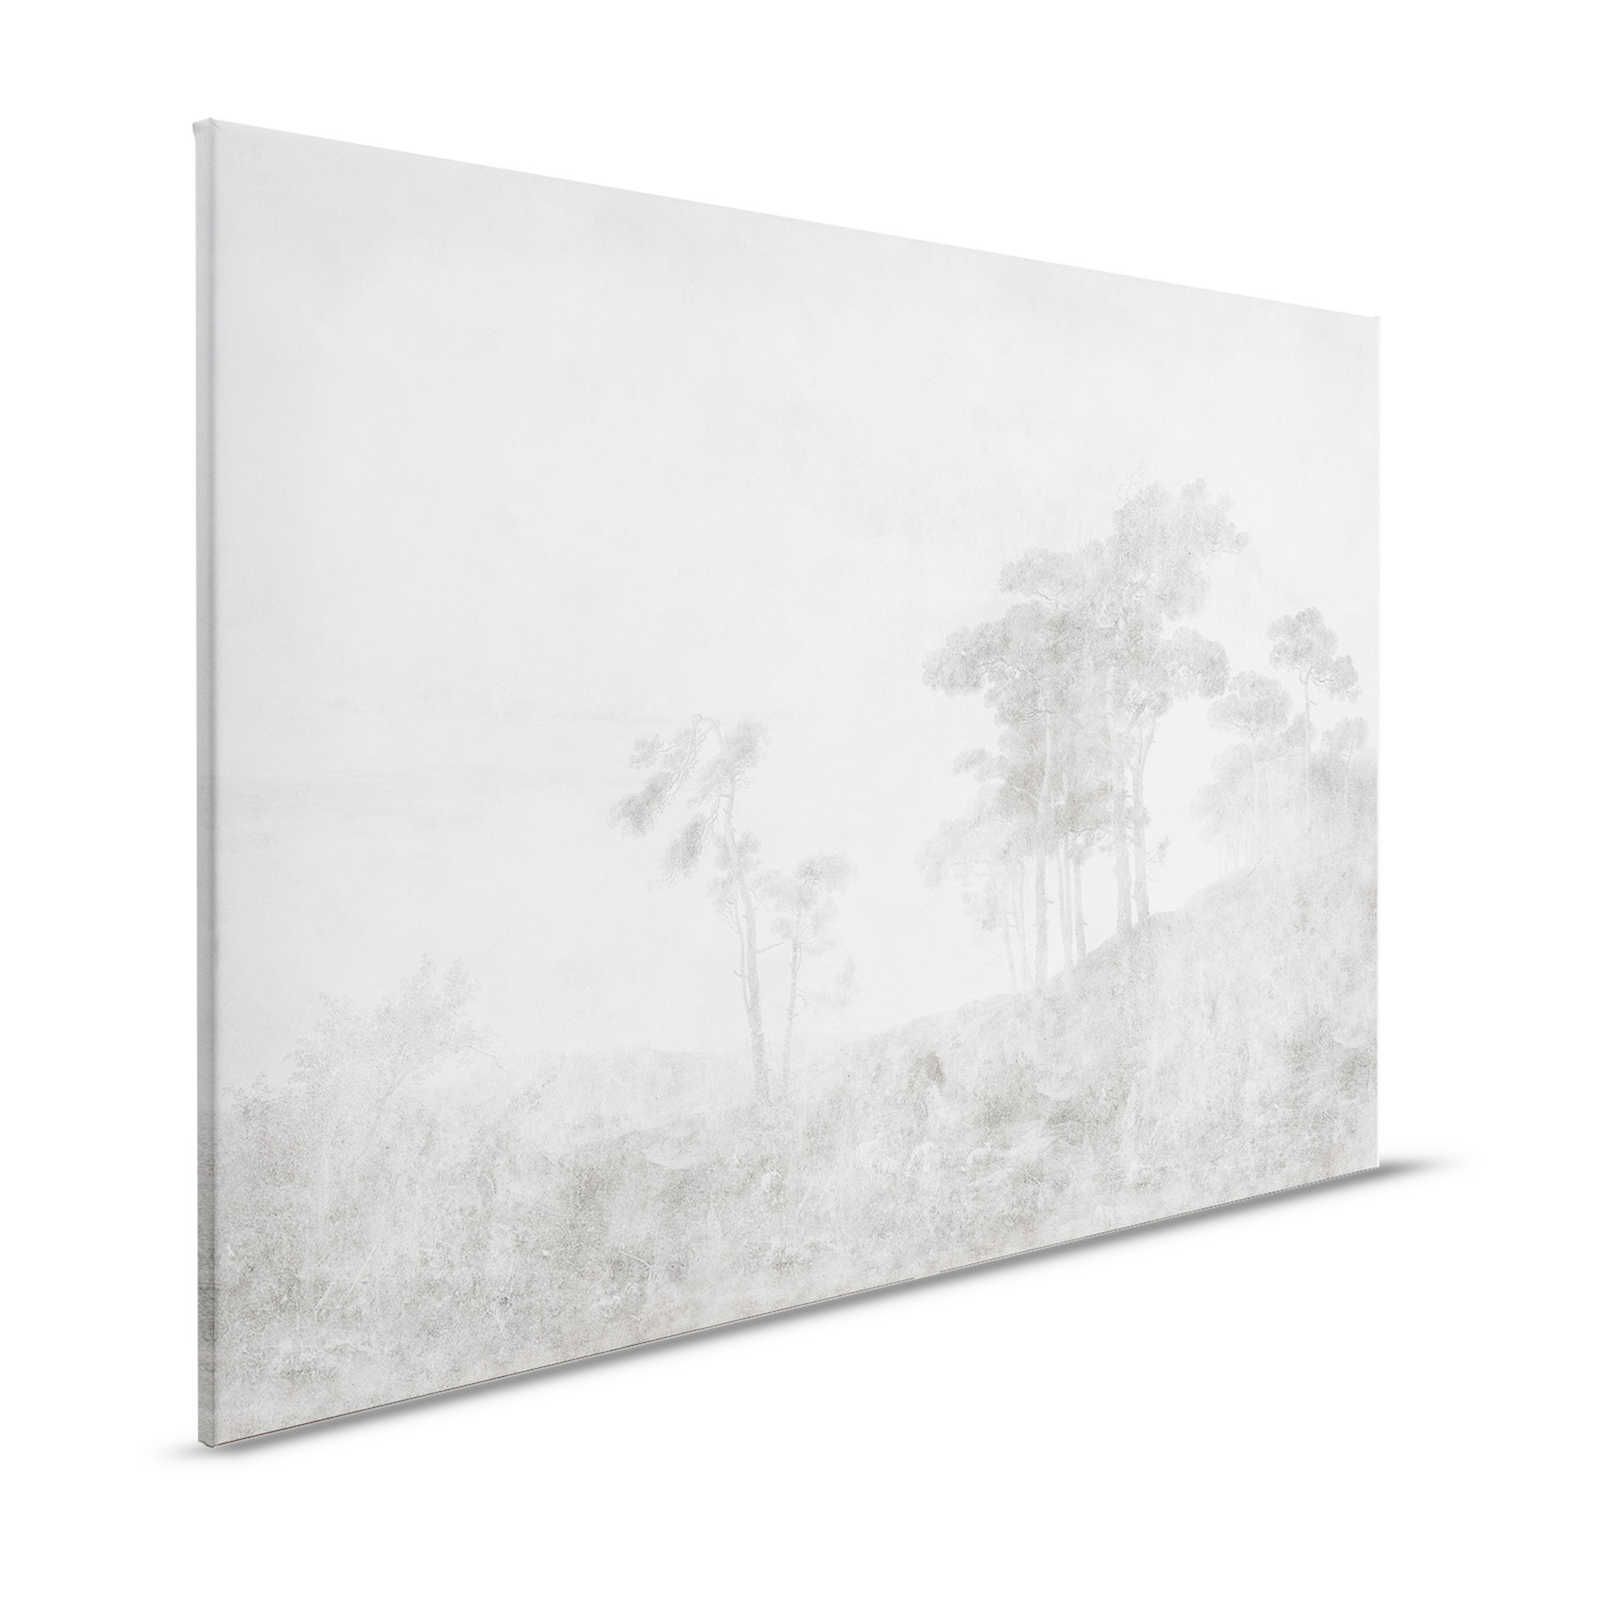 Romantic Grove 2 - Landschap Canvas Schilderij Vintage Stijl - 1.20 m x 0.80 m
